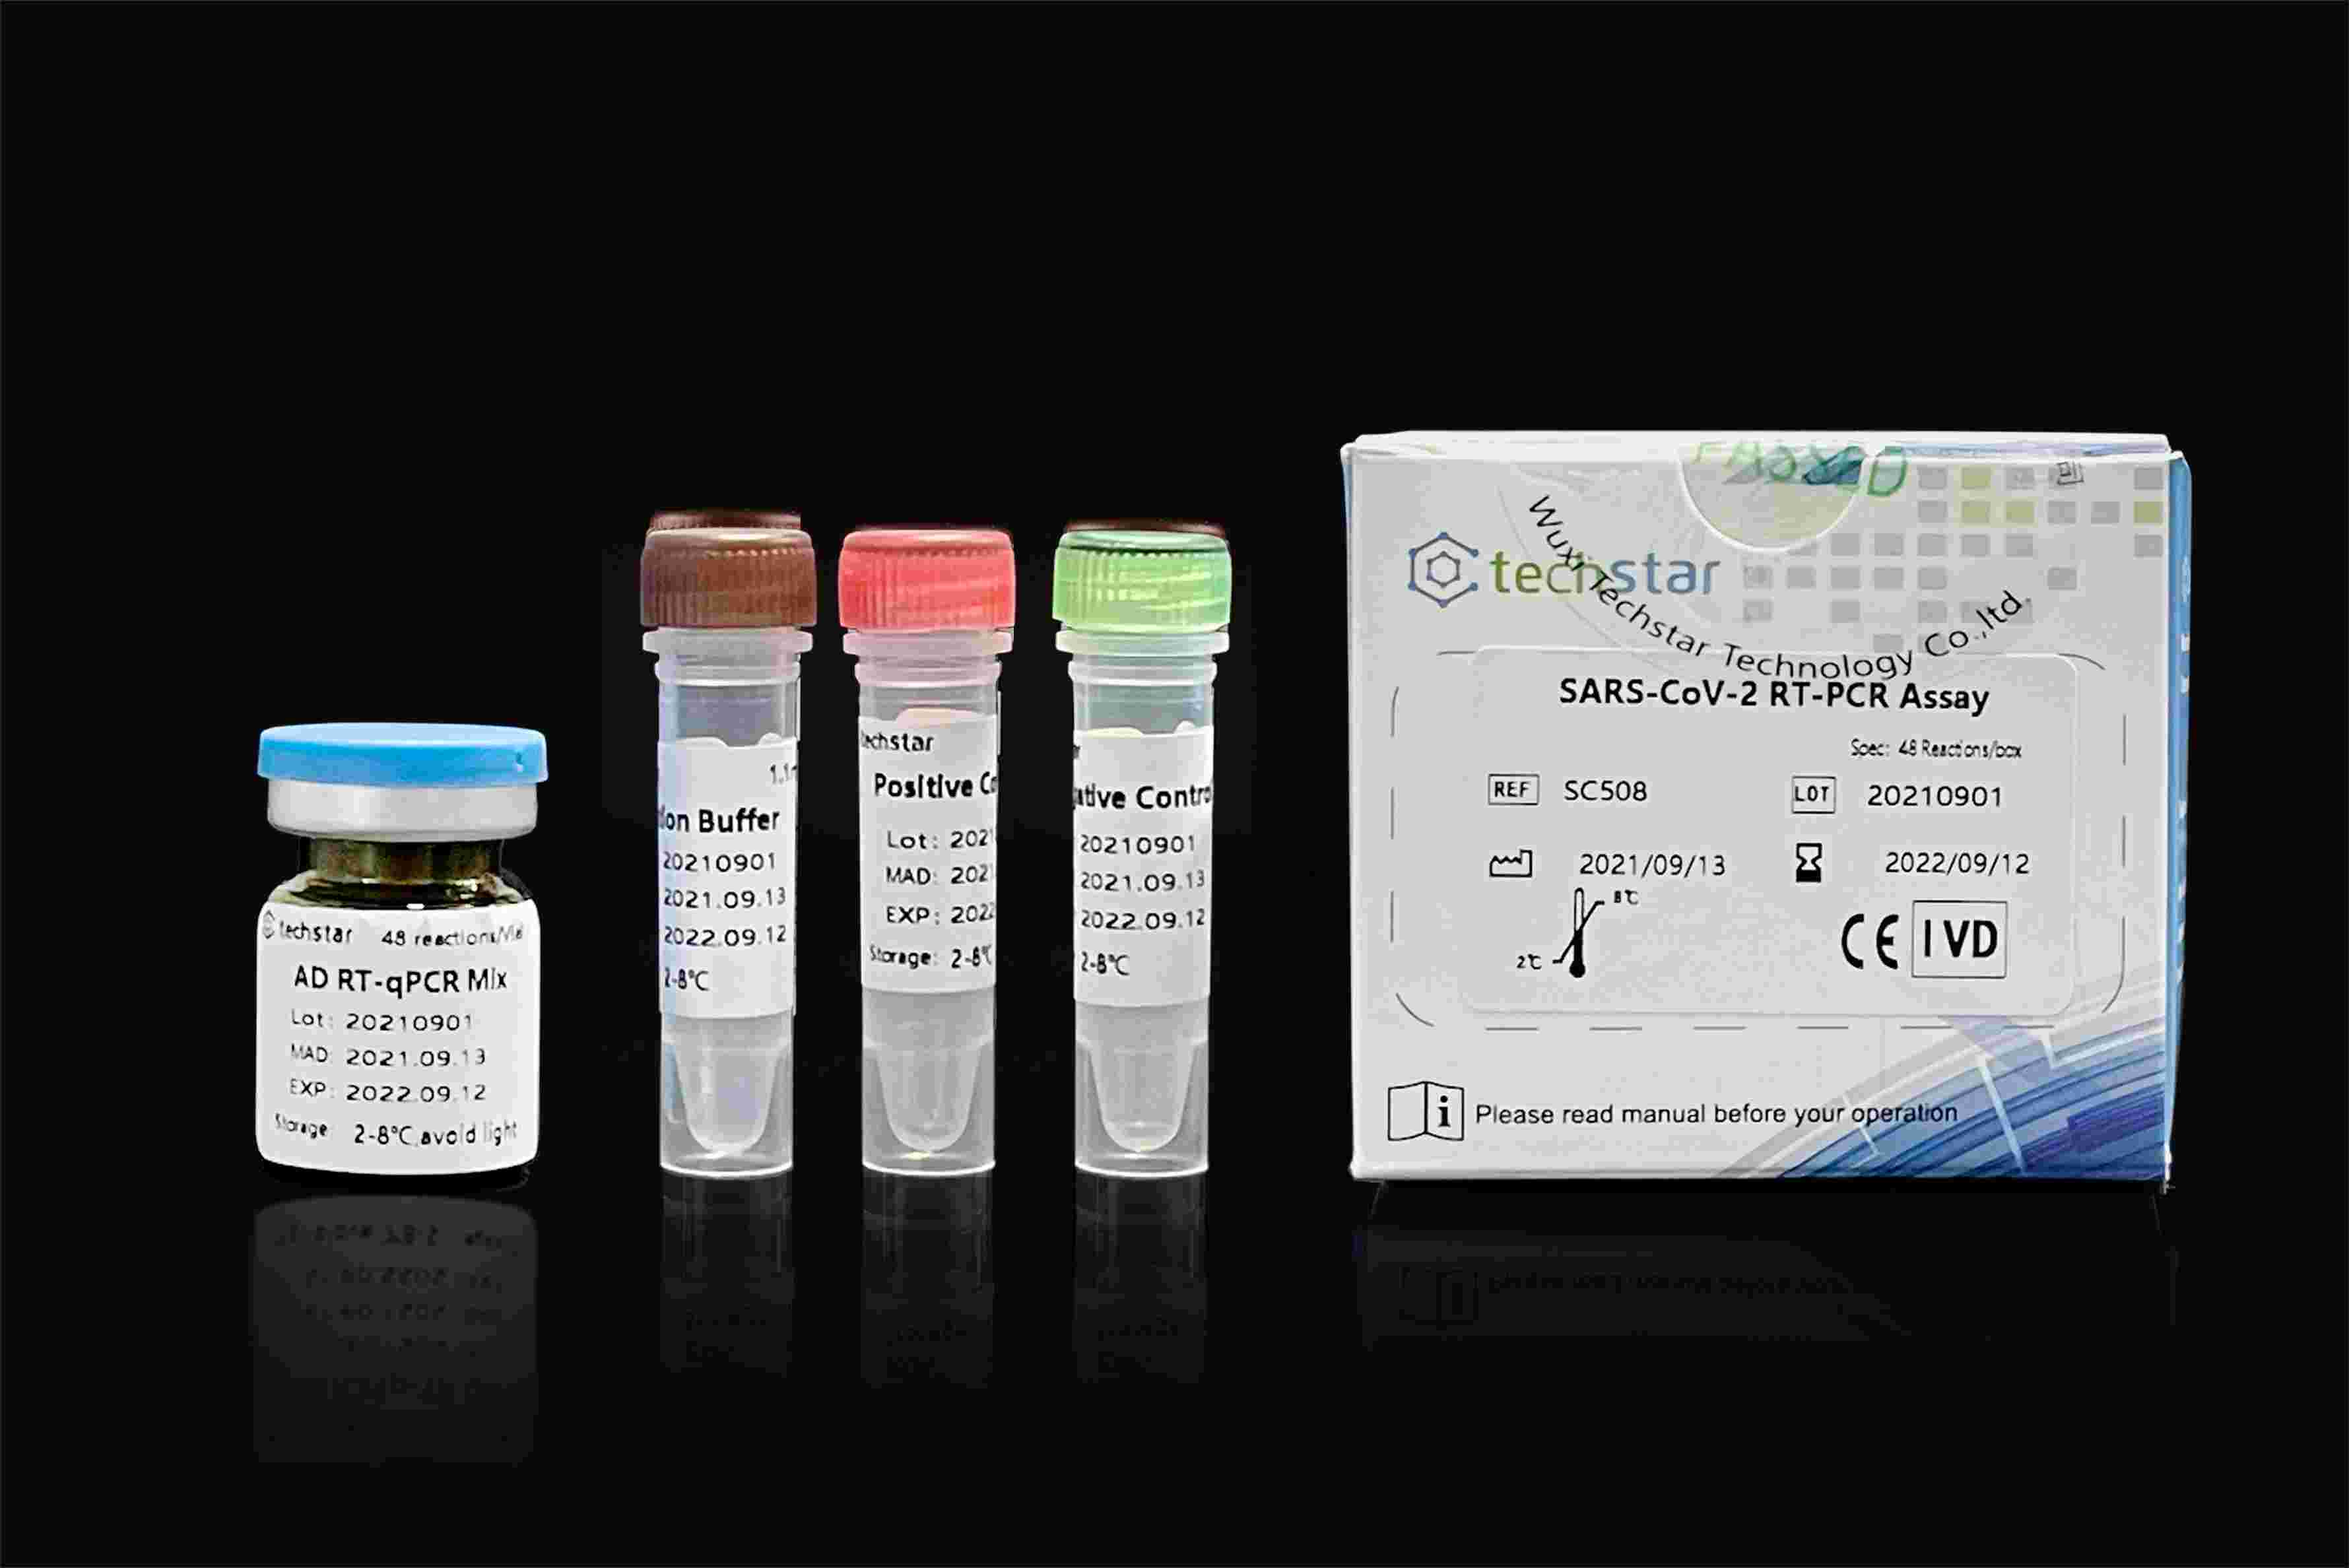 SARS-CoV-2 Nucleic Acid Test Kit